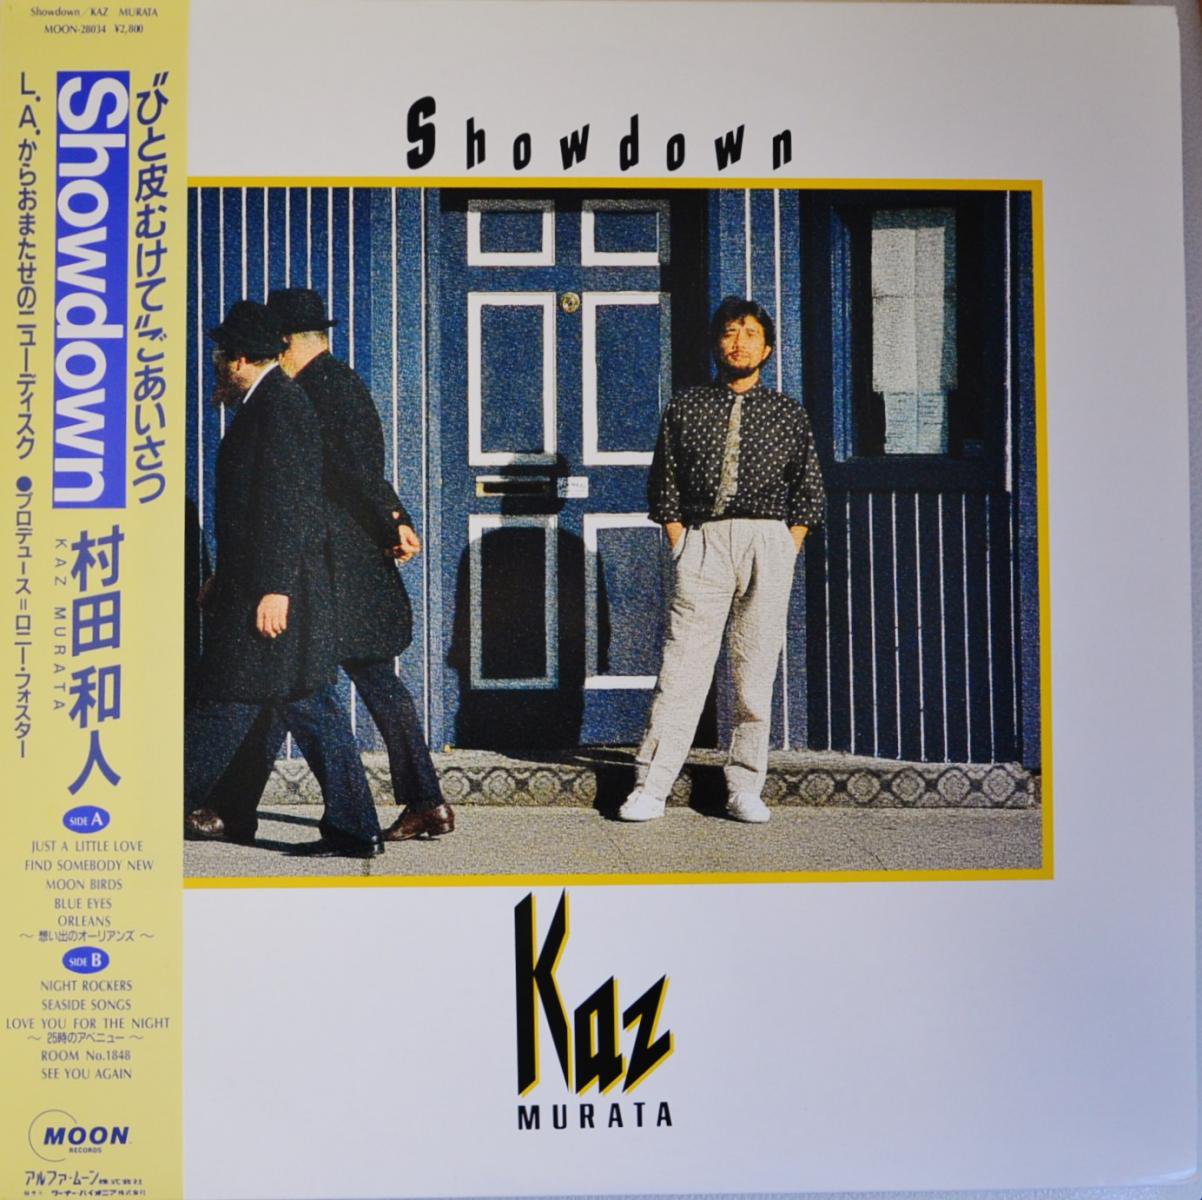 ¼¿ KAZUHITO MURATA / SHOWDOWN (LP)